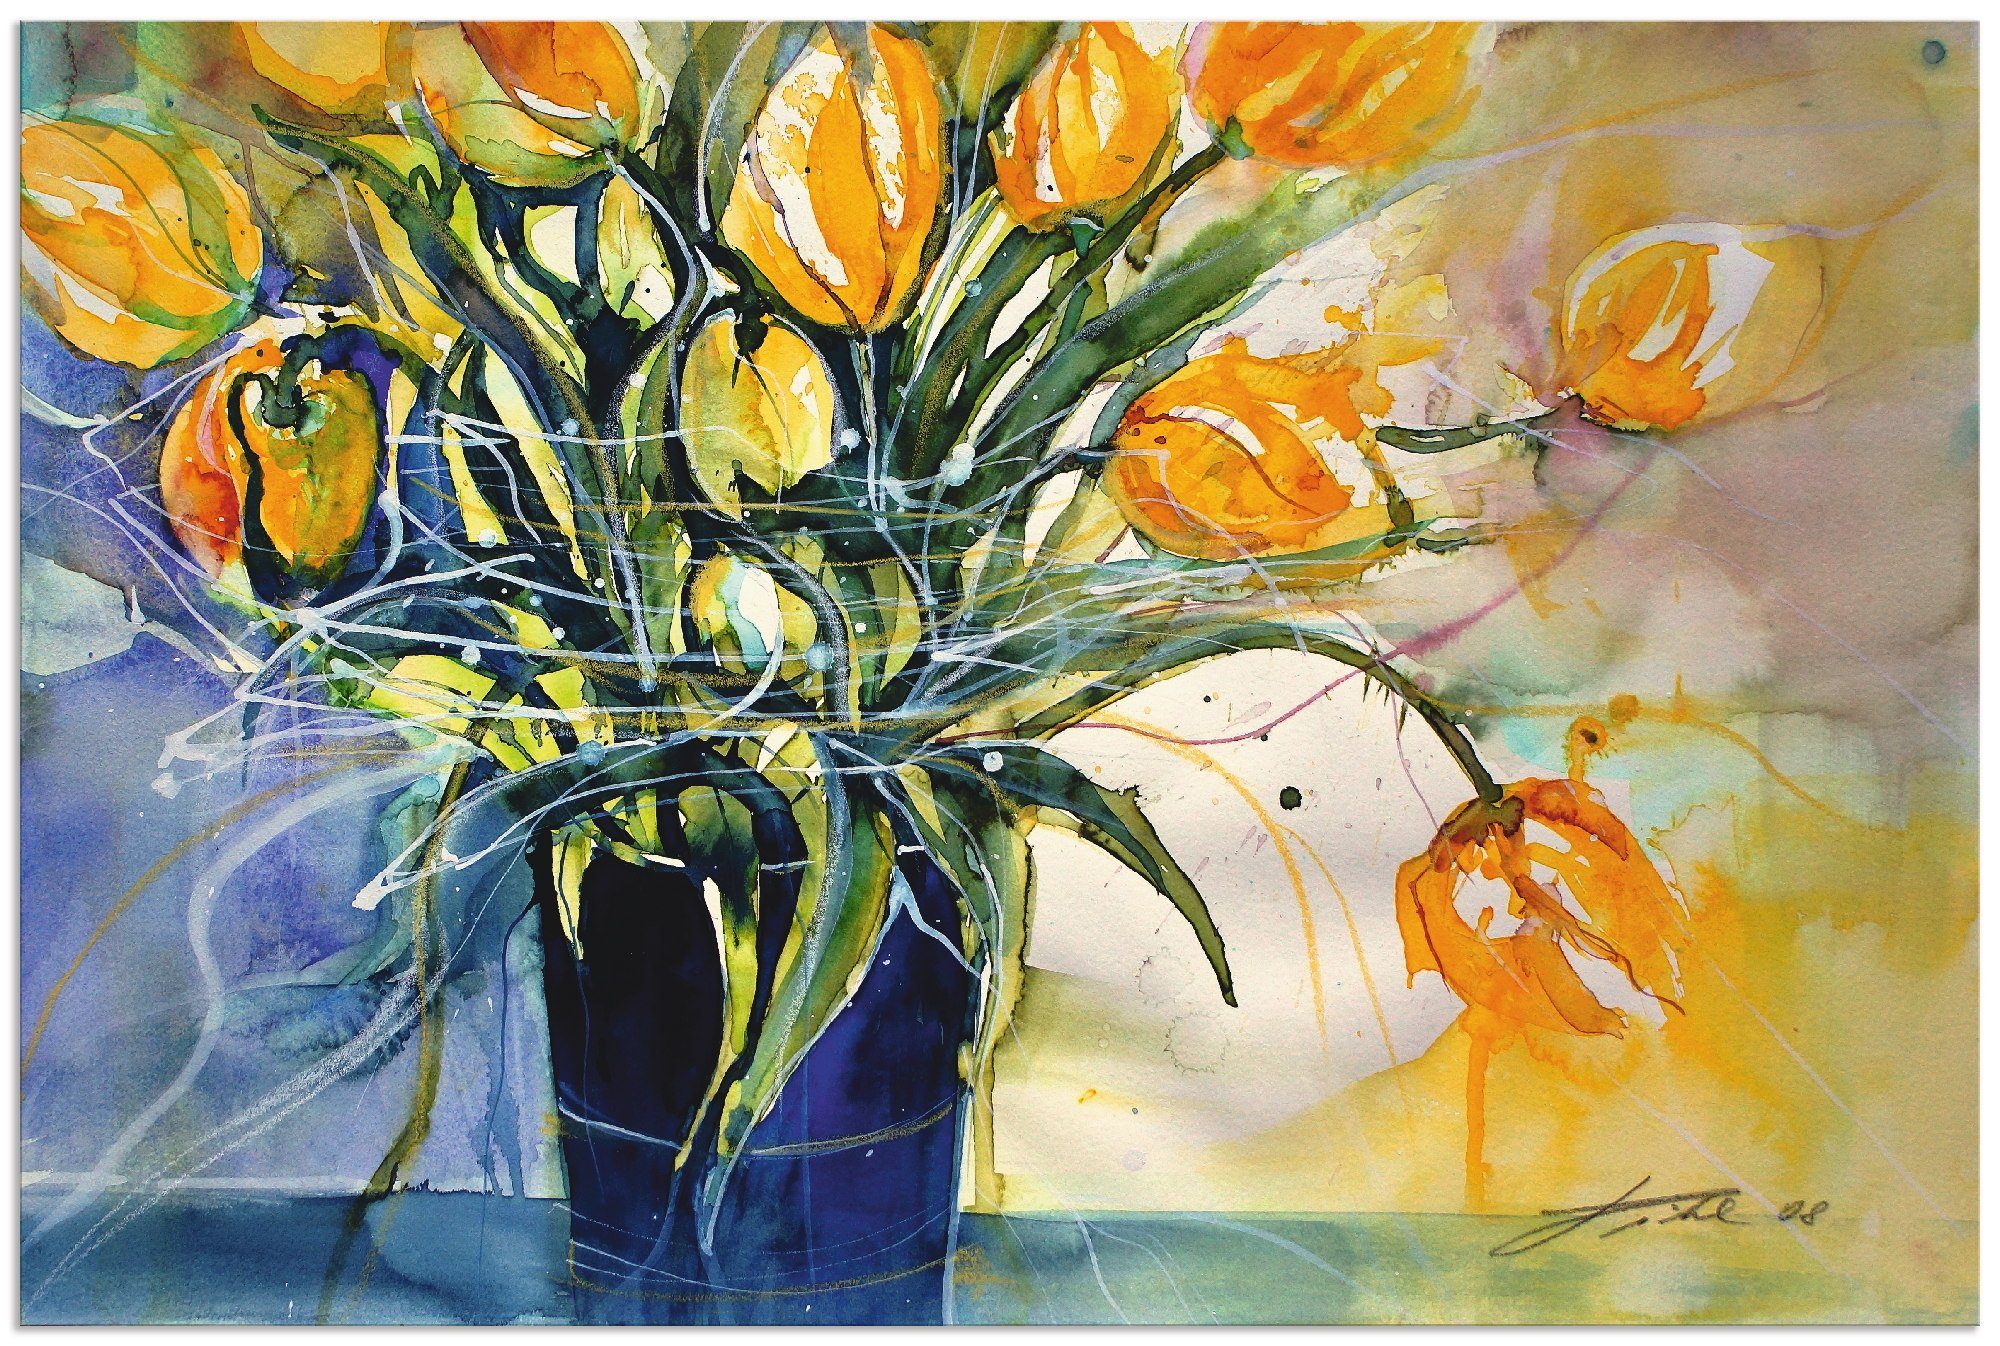 Artland Artprint Gele tulpen in zwarte vaas in vele afmetingen & productsoorten - artprint van aluminium / artprint voor buiten, artprint op linnen, poster, muursticker / wandfolie